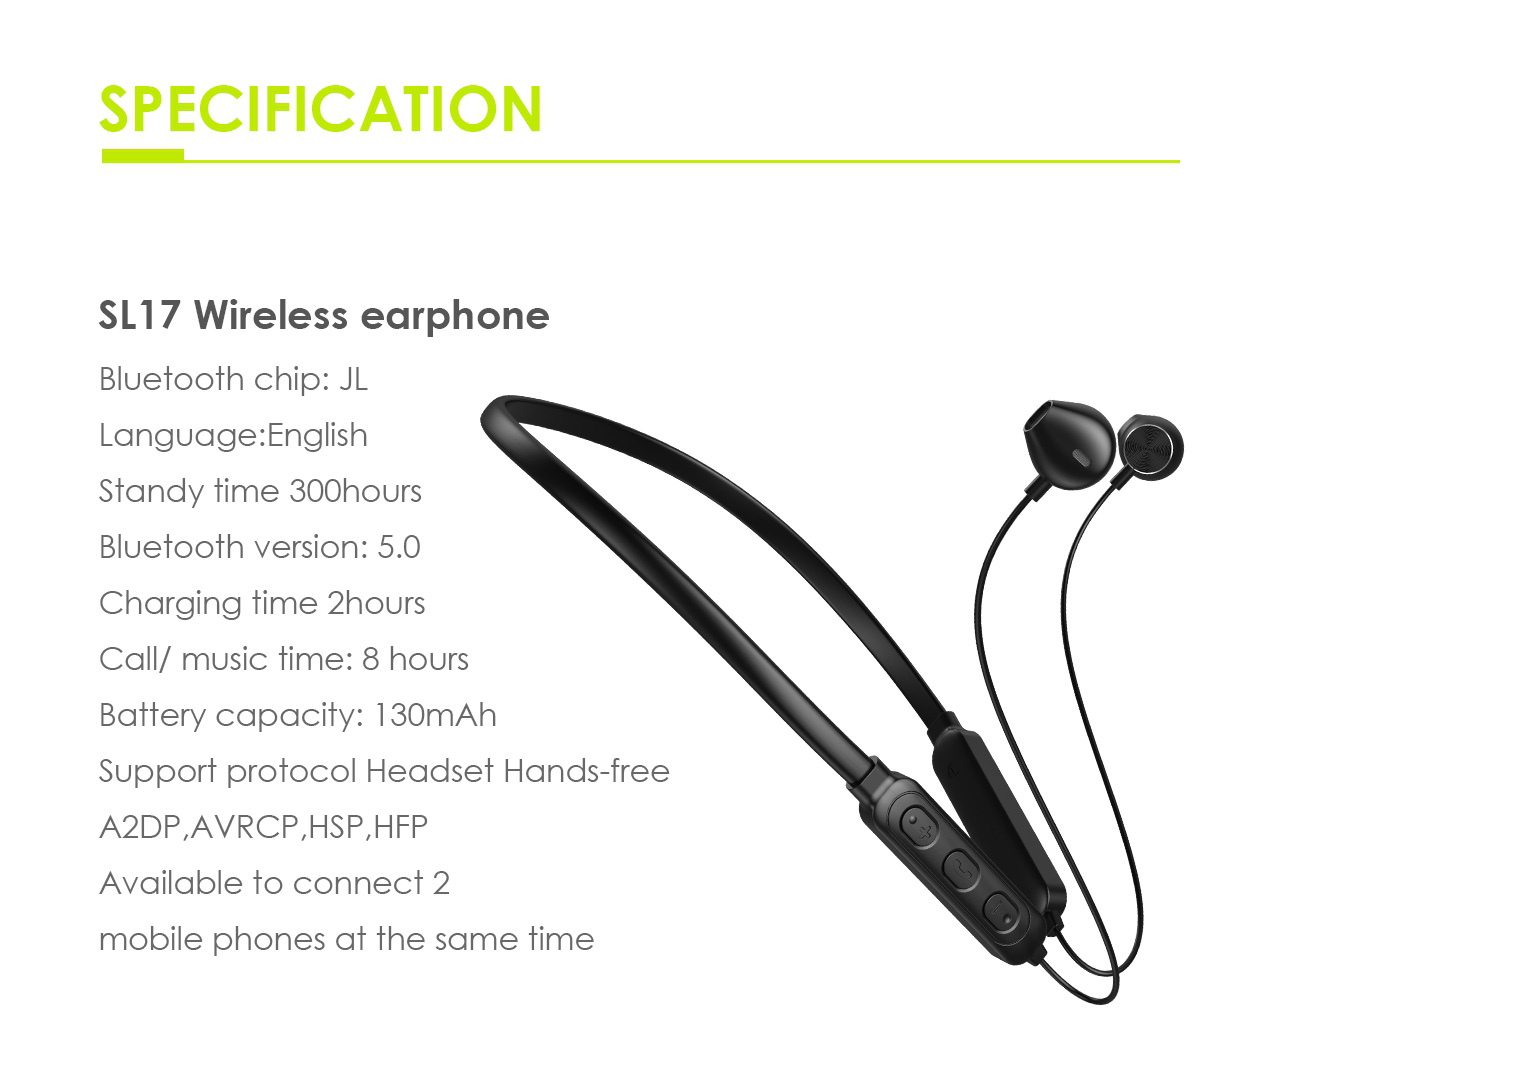 SL17 wireless earphone